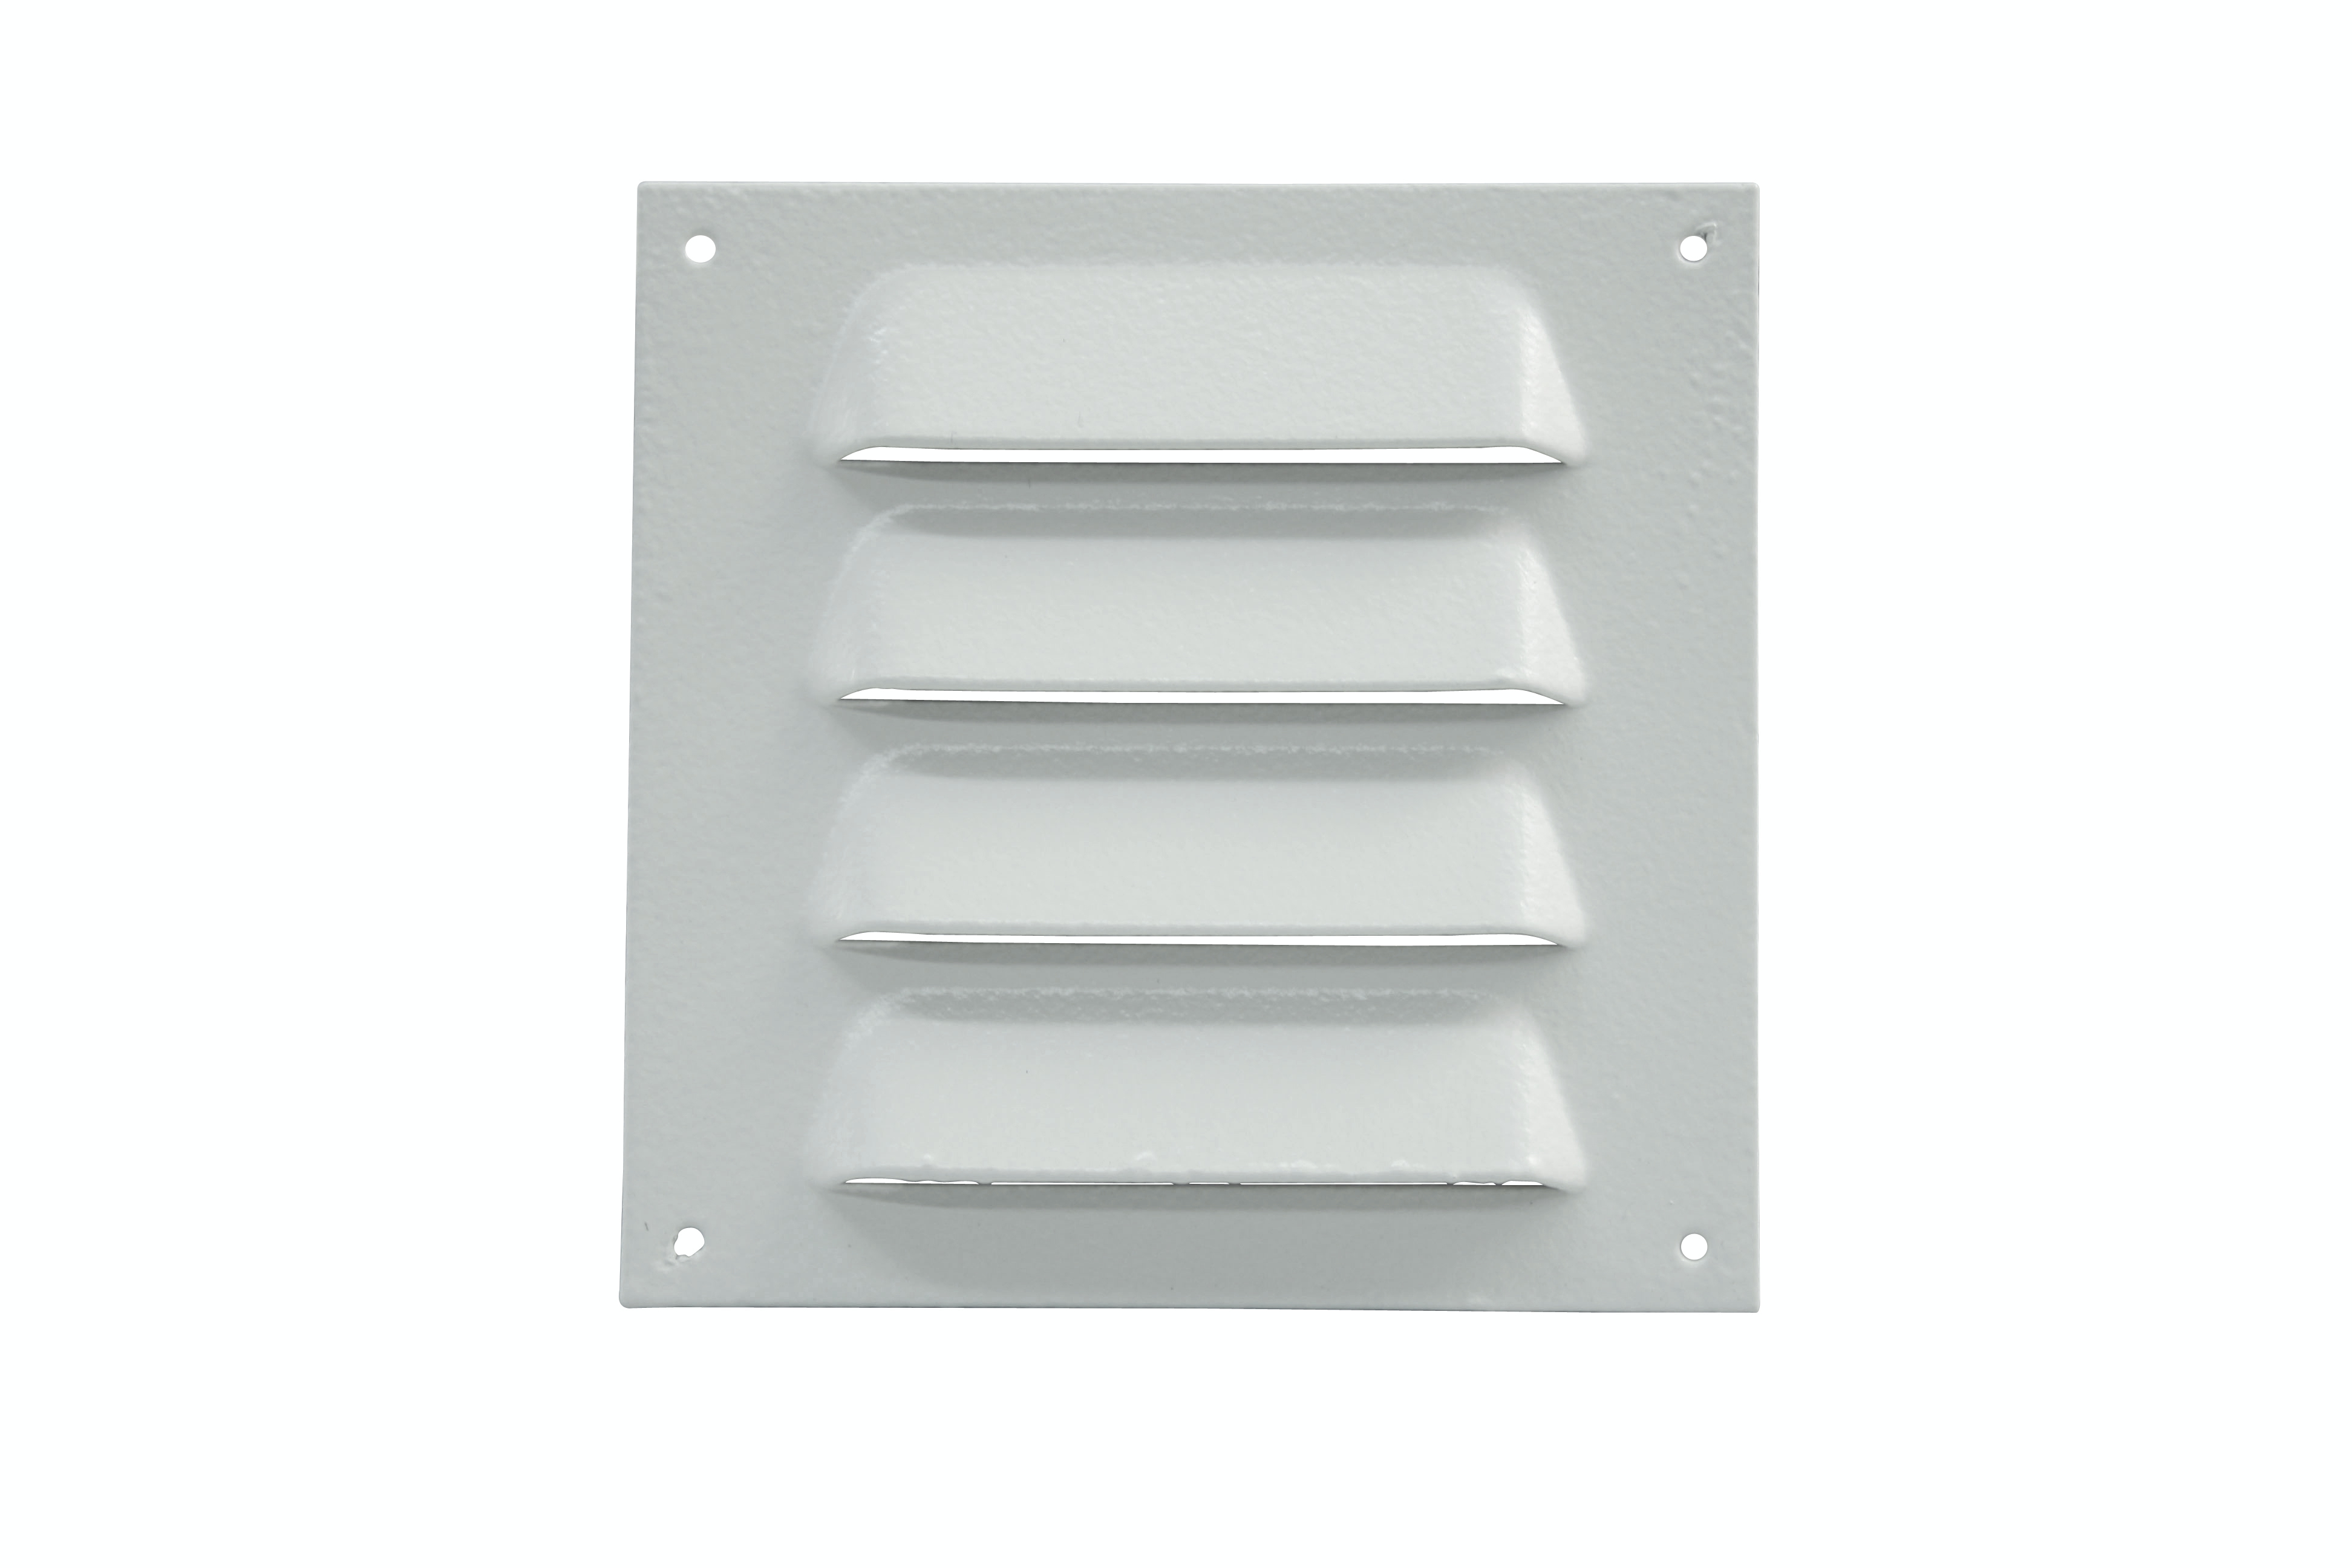 Marley Lüftungsgitter aus Aluminium, mit Beschichtung, 70x70 mm, Weiß